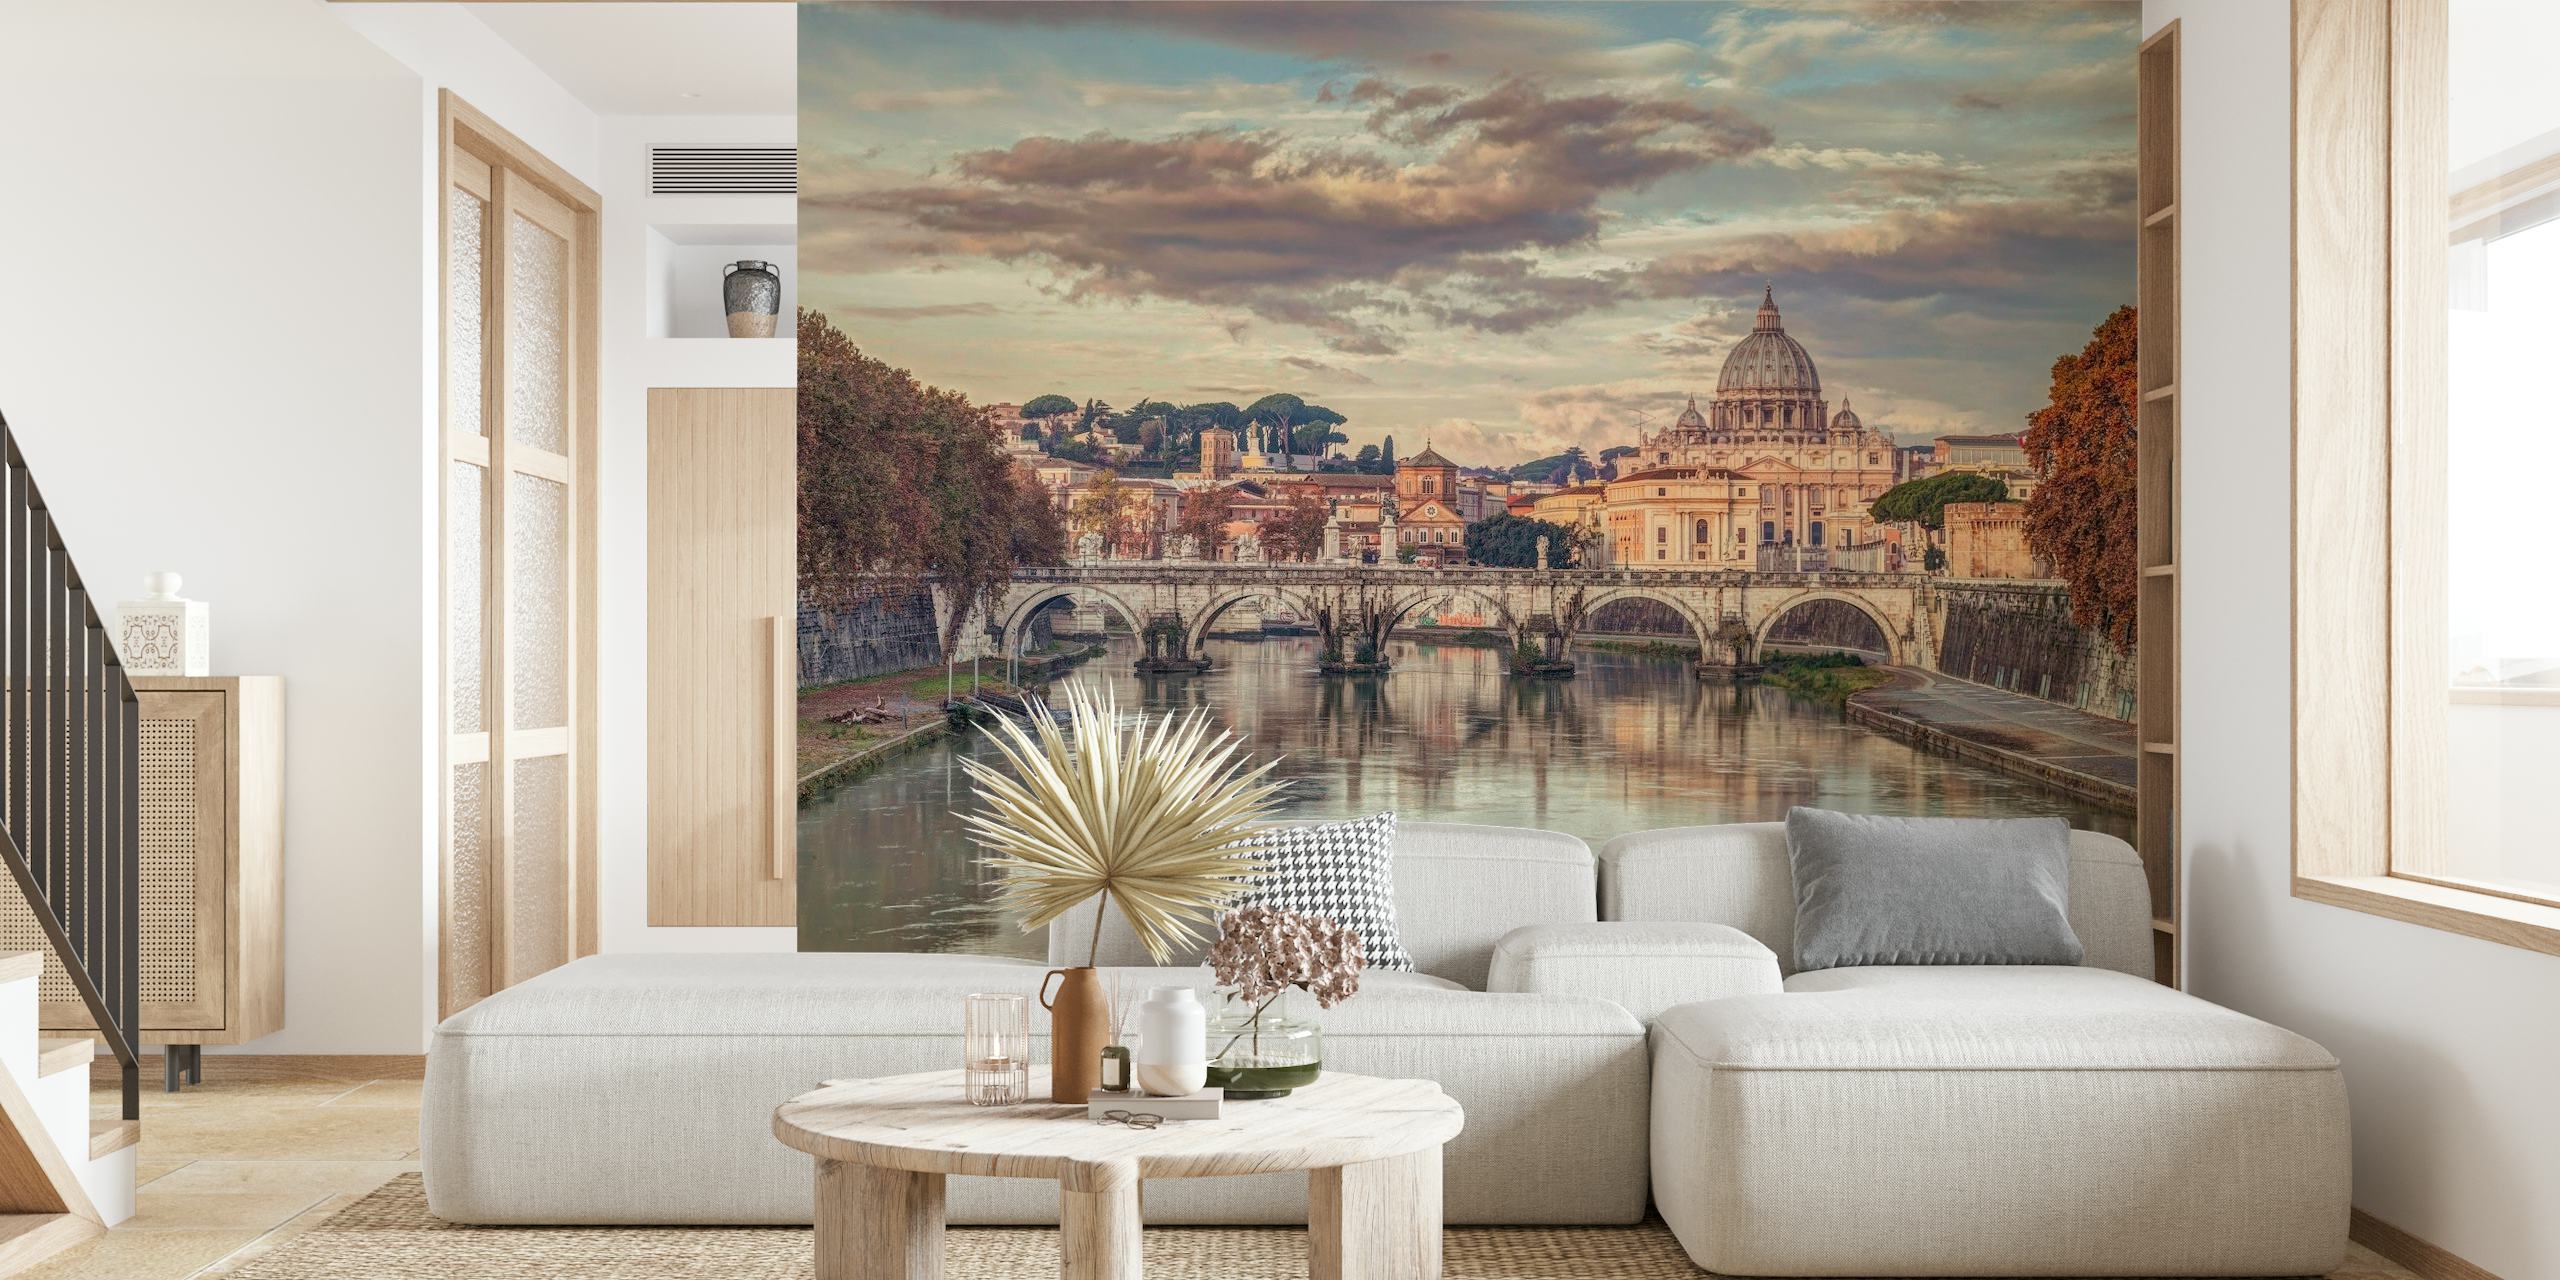 Wandgemälde der Basilika San Pietro und der Engelsbrücke über dem Tiber